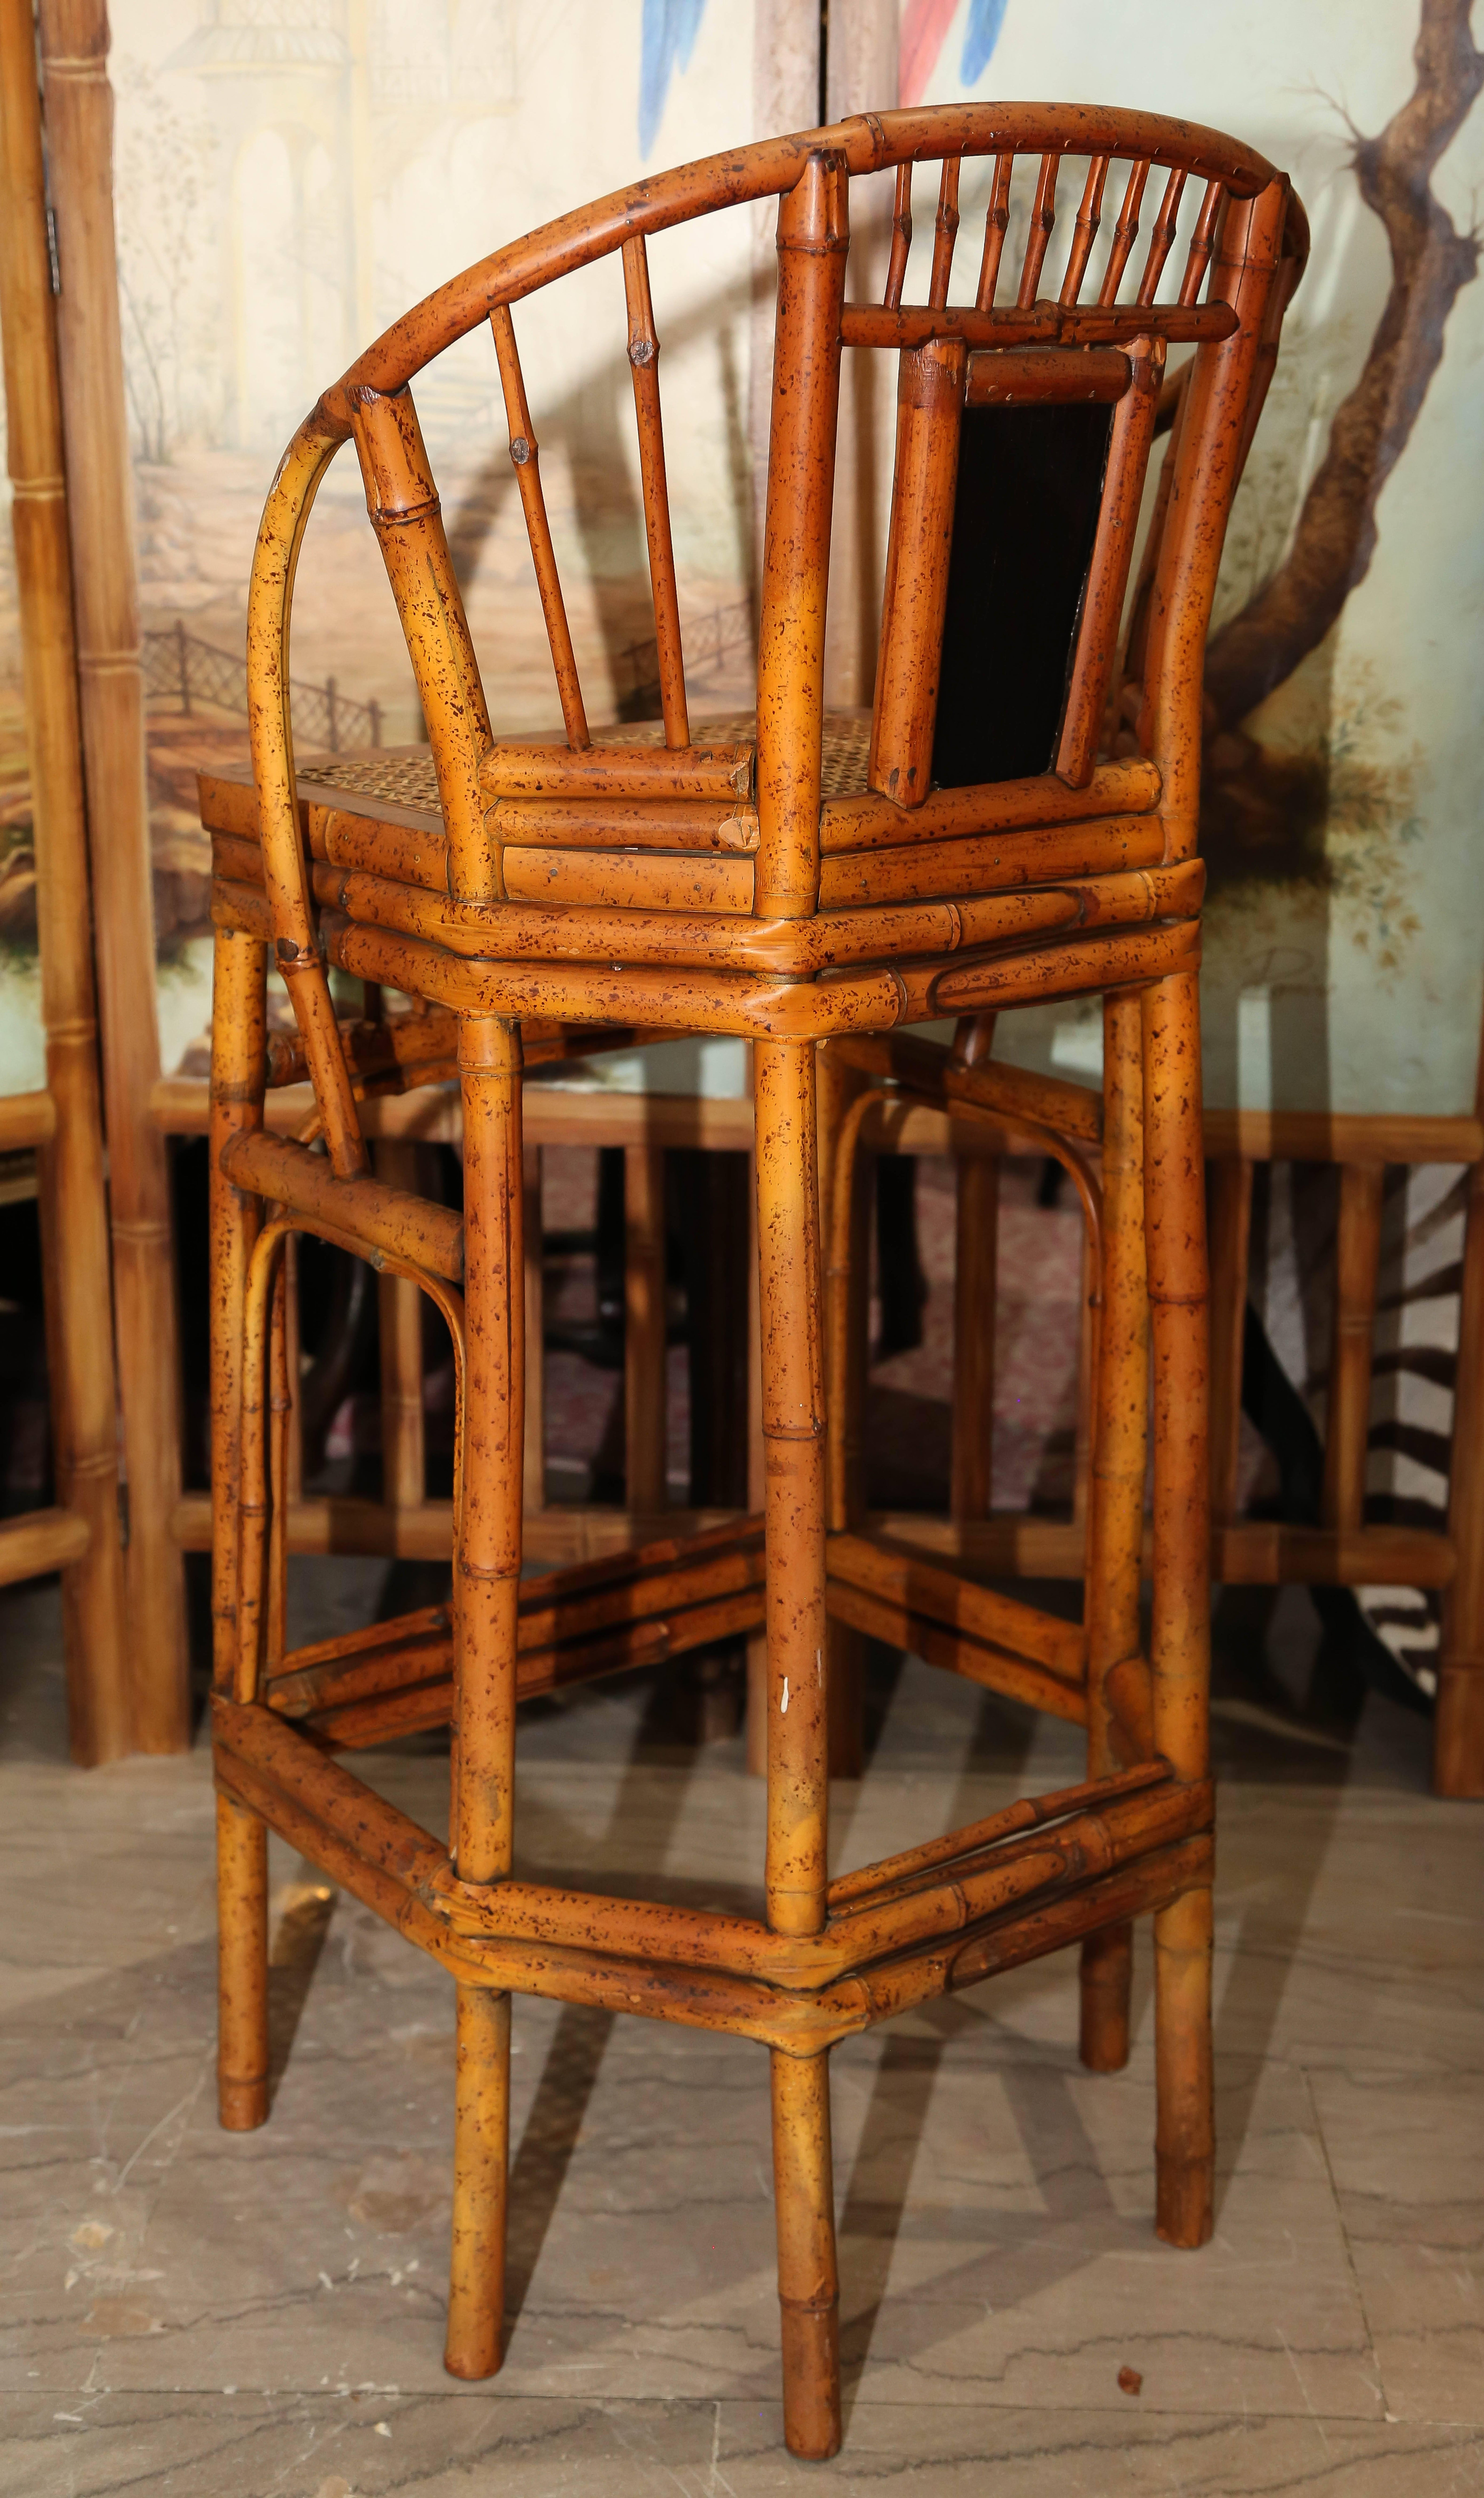 vintage bamboo bar stools